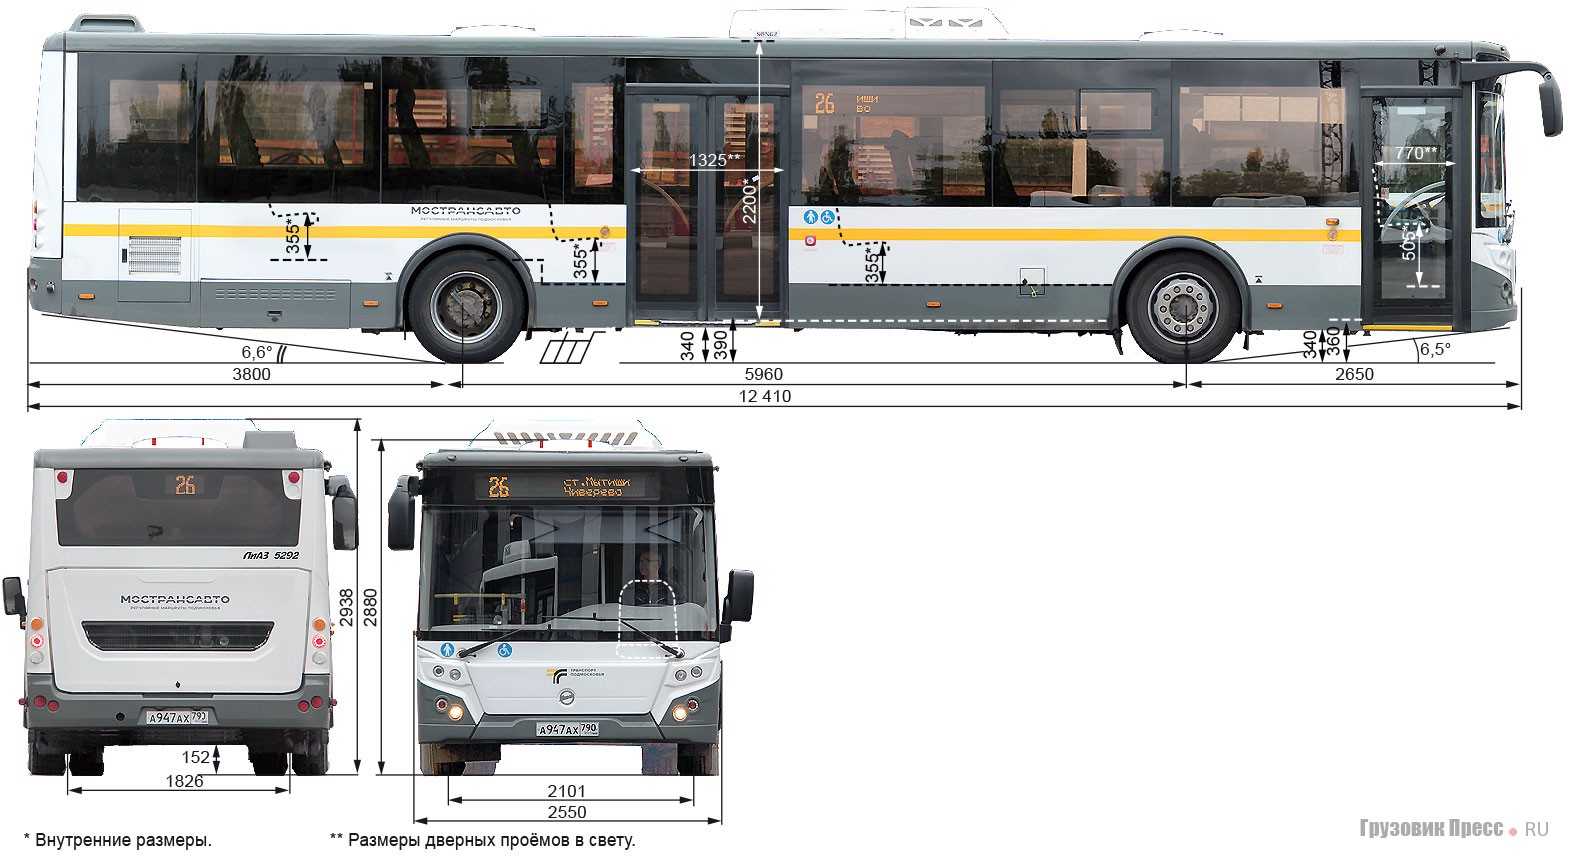 Лиаз-5292.67 cng - экологичные автобусы нового поколения на природном газе